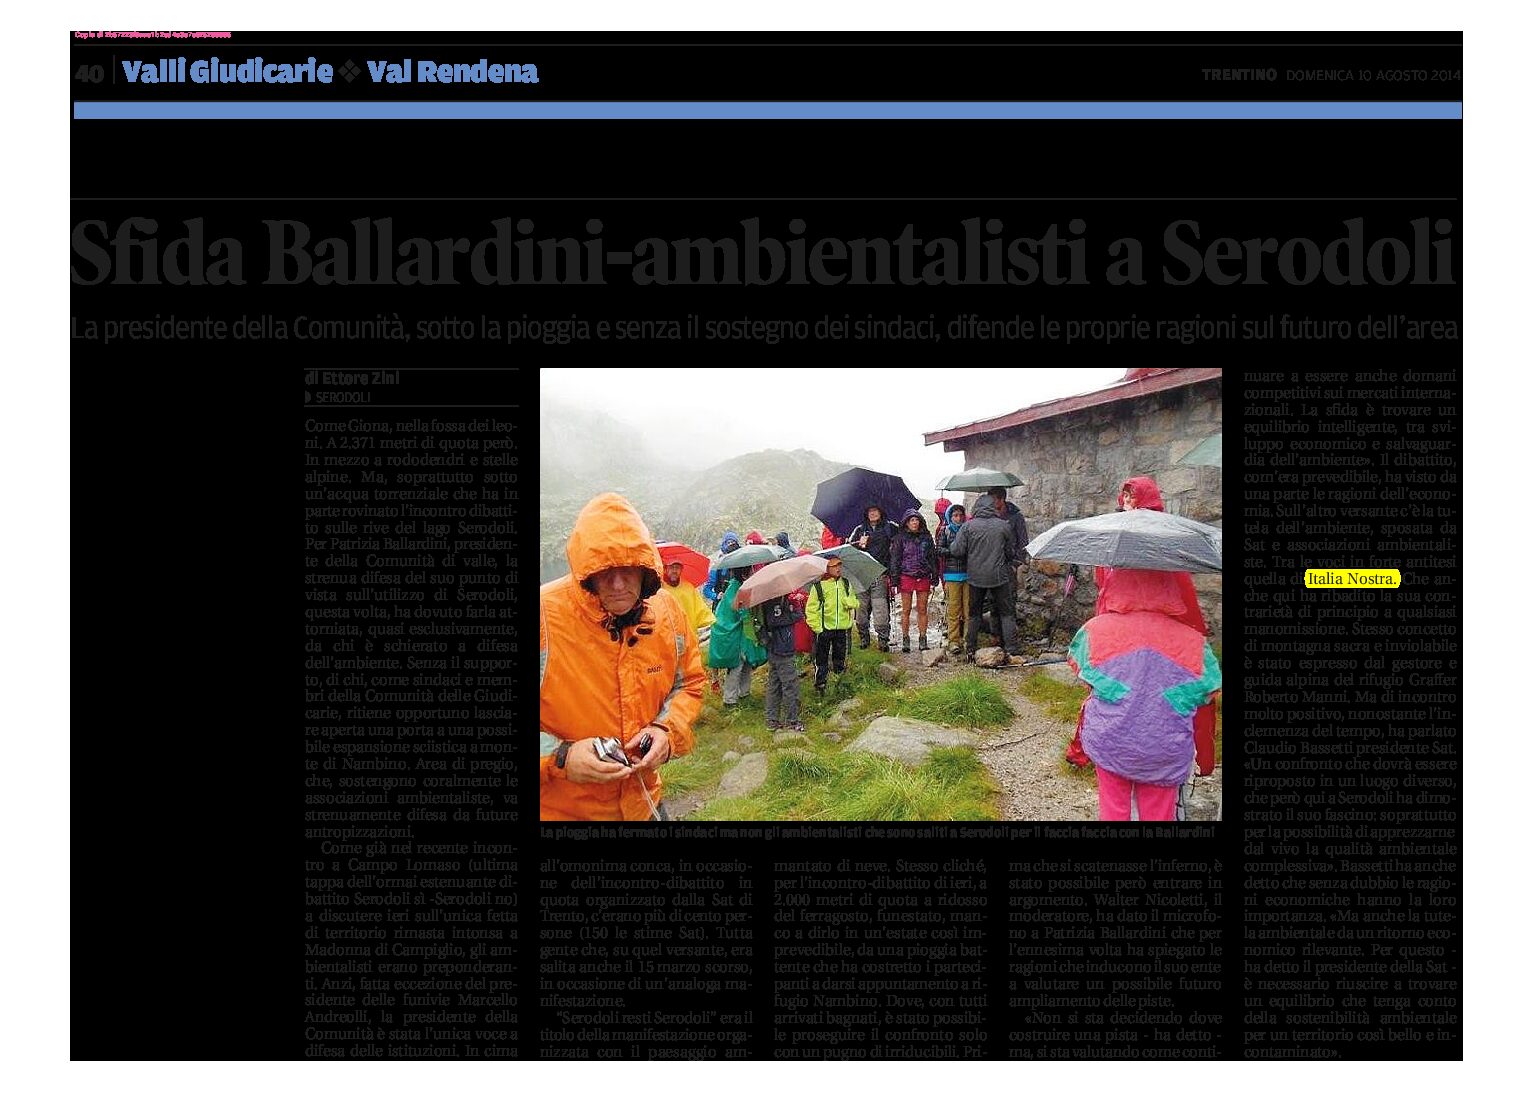 Serodoli: sfida Ballardini – ambientalisti